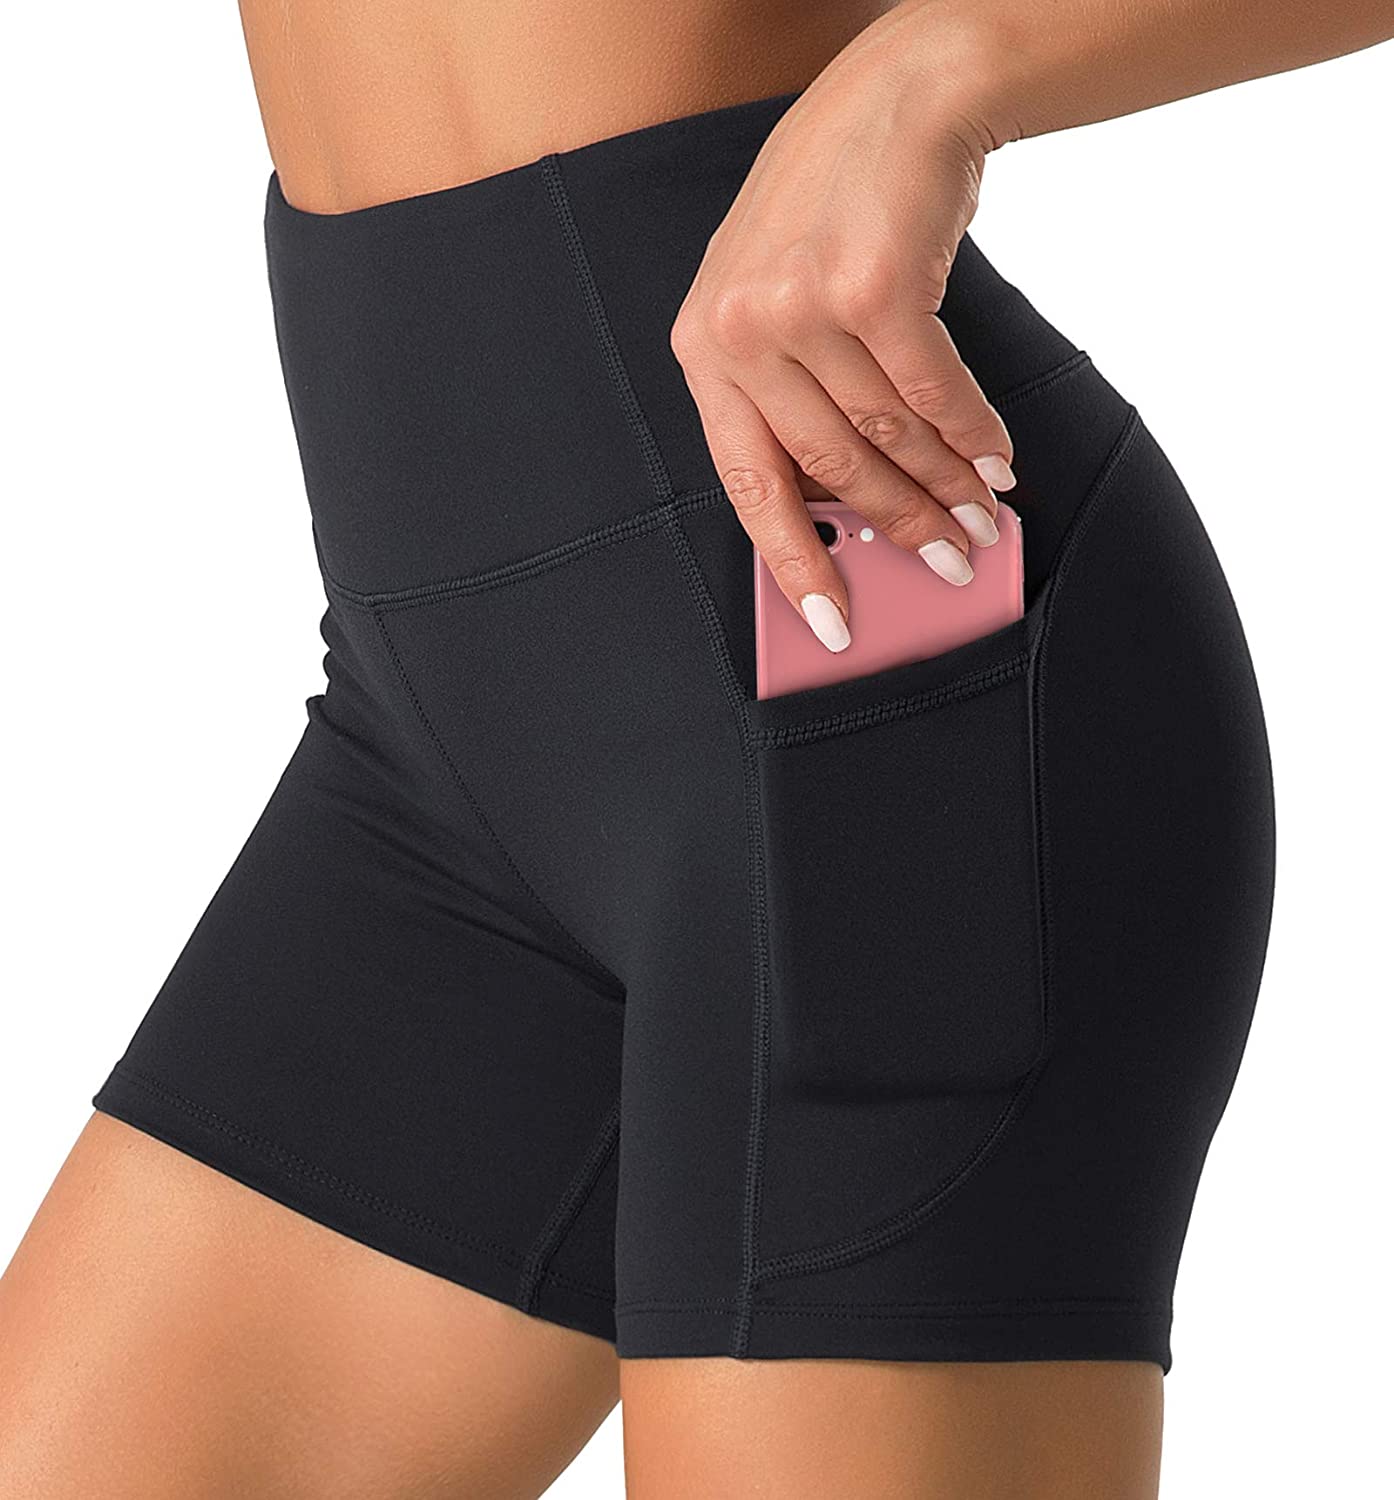 Dragon Fit High Waist Yoga Shorts for Women with 2 Side Pockets Tummy  Control Ru | eBay